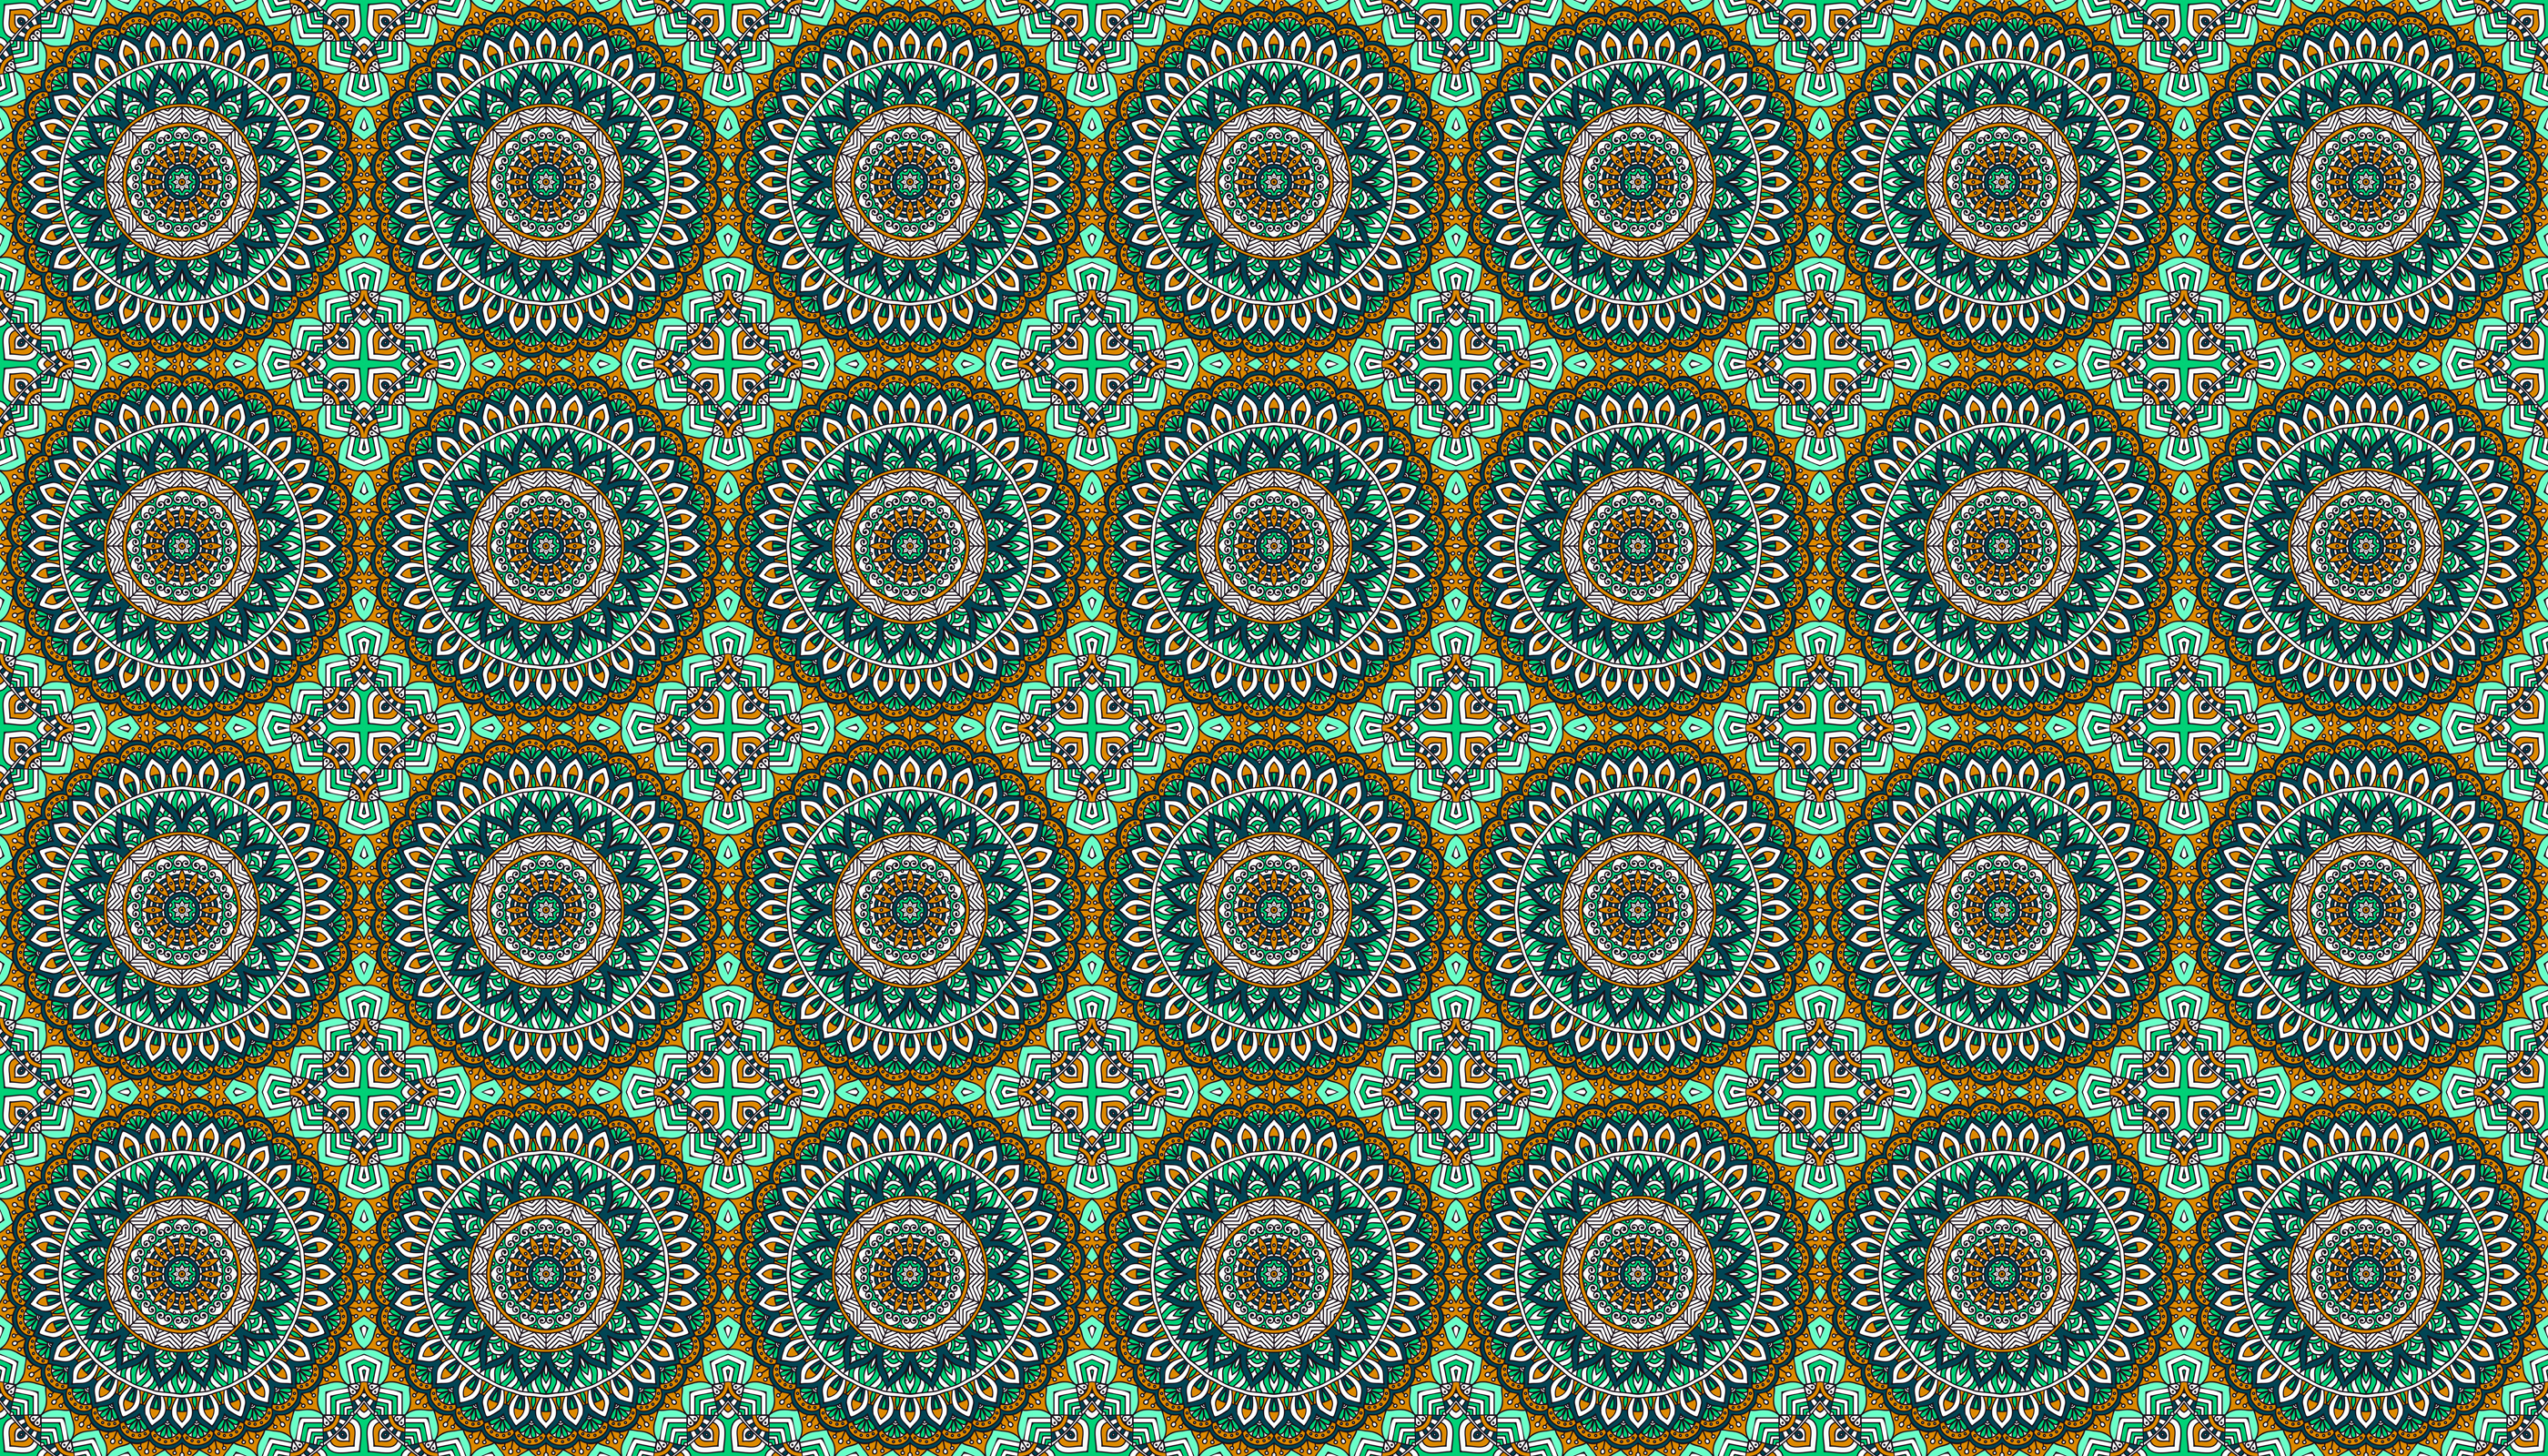 Pattern 0 9 10. Орнамент на ткани. Ткань с восточным орнаментом. Узбекские национальные узоры. Текстура ткани с узором.